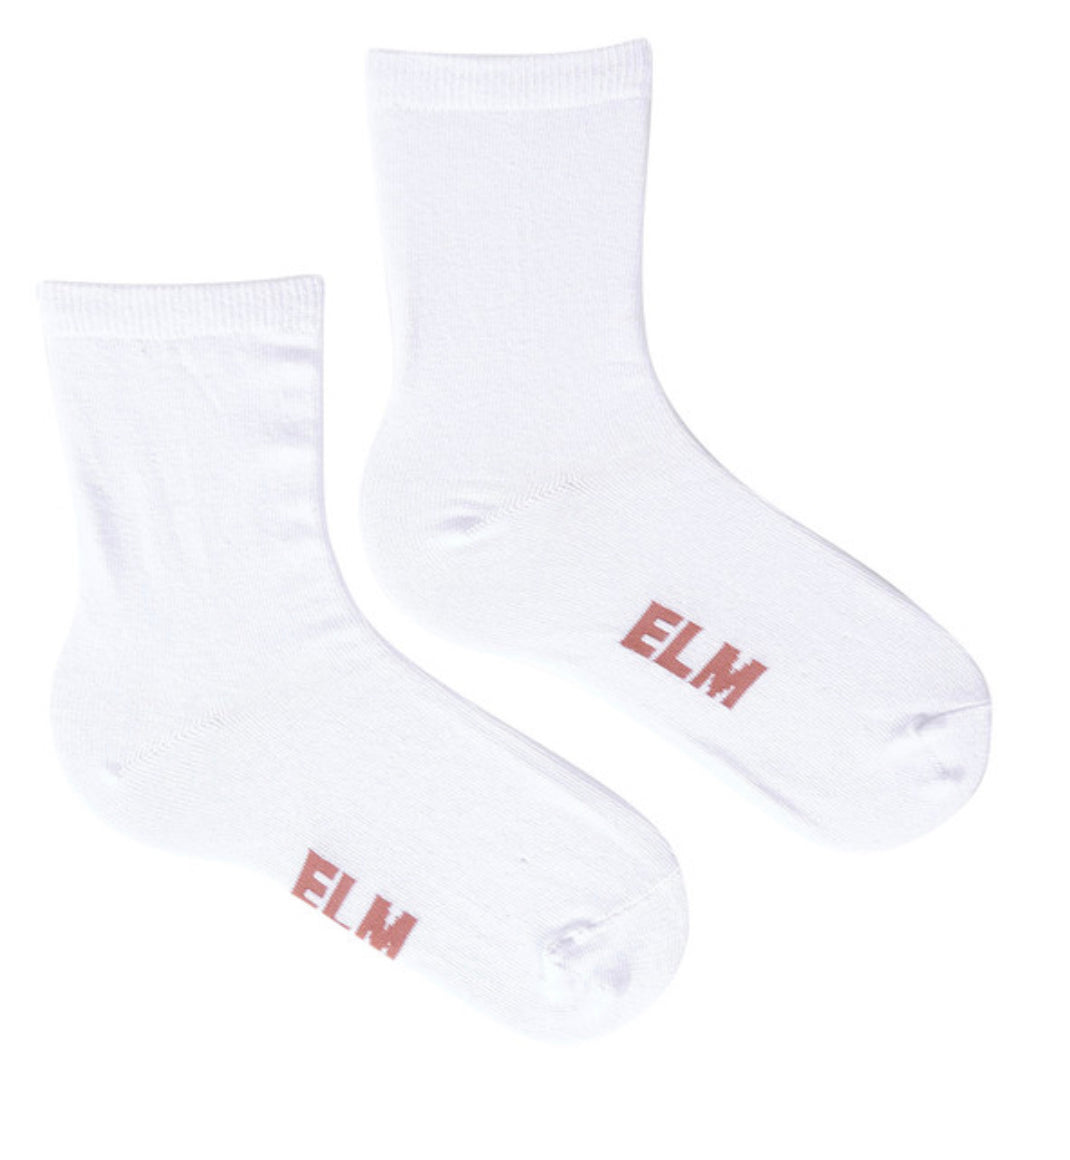 Elm Ladies Ankle Socks